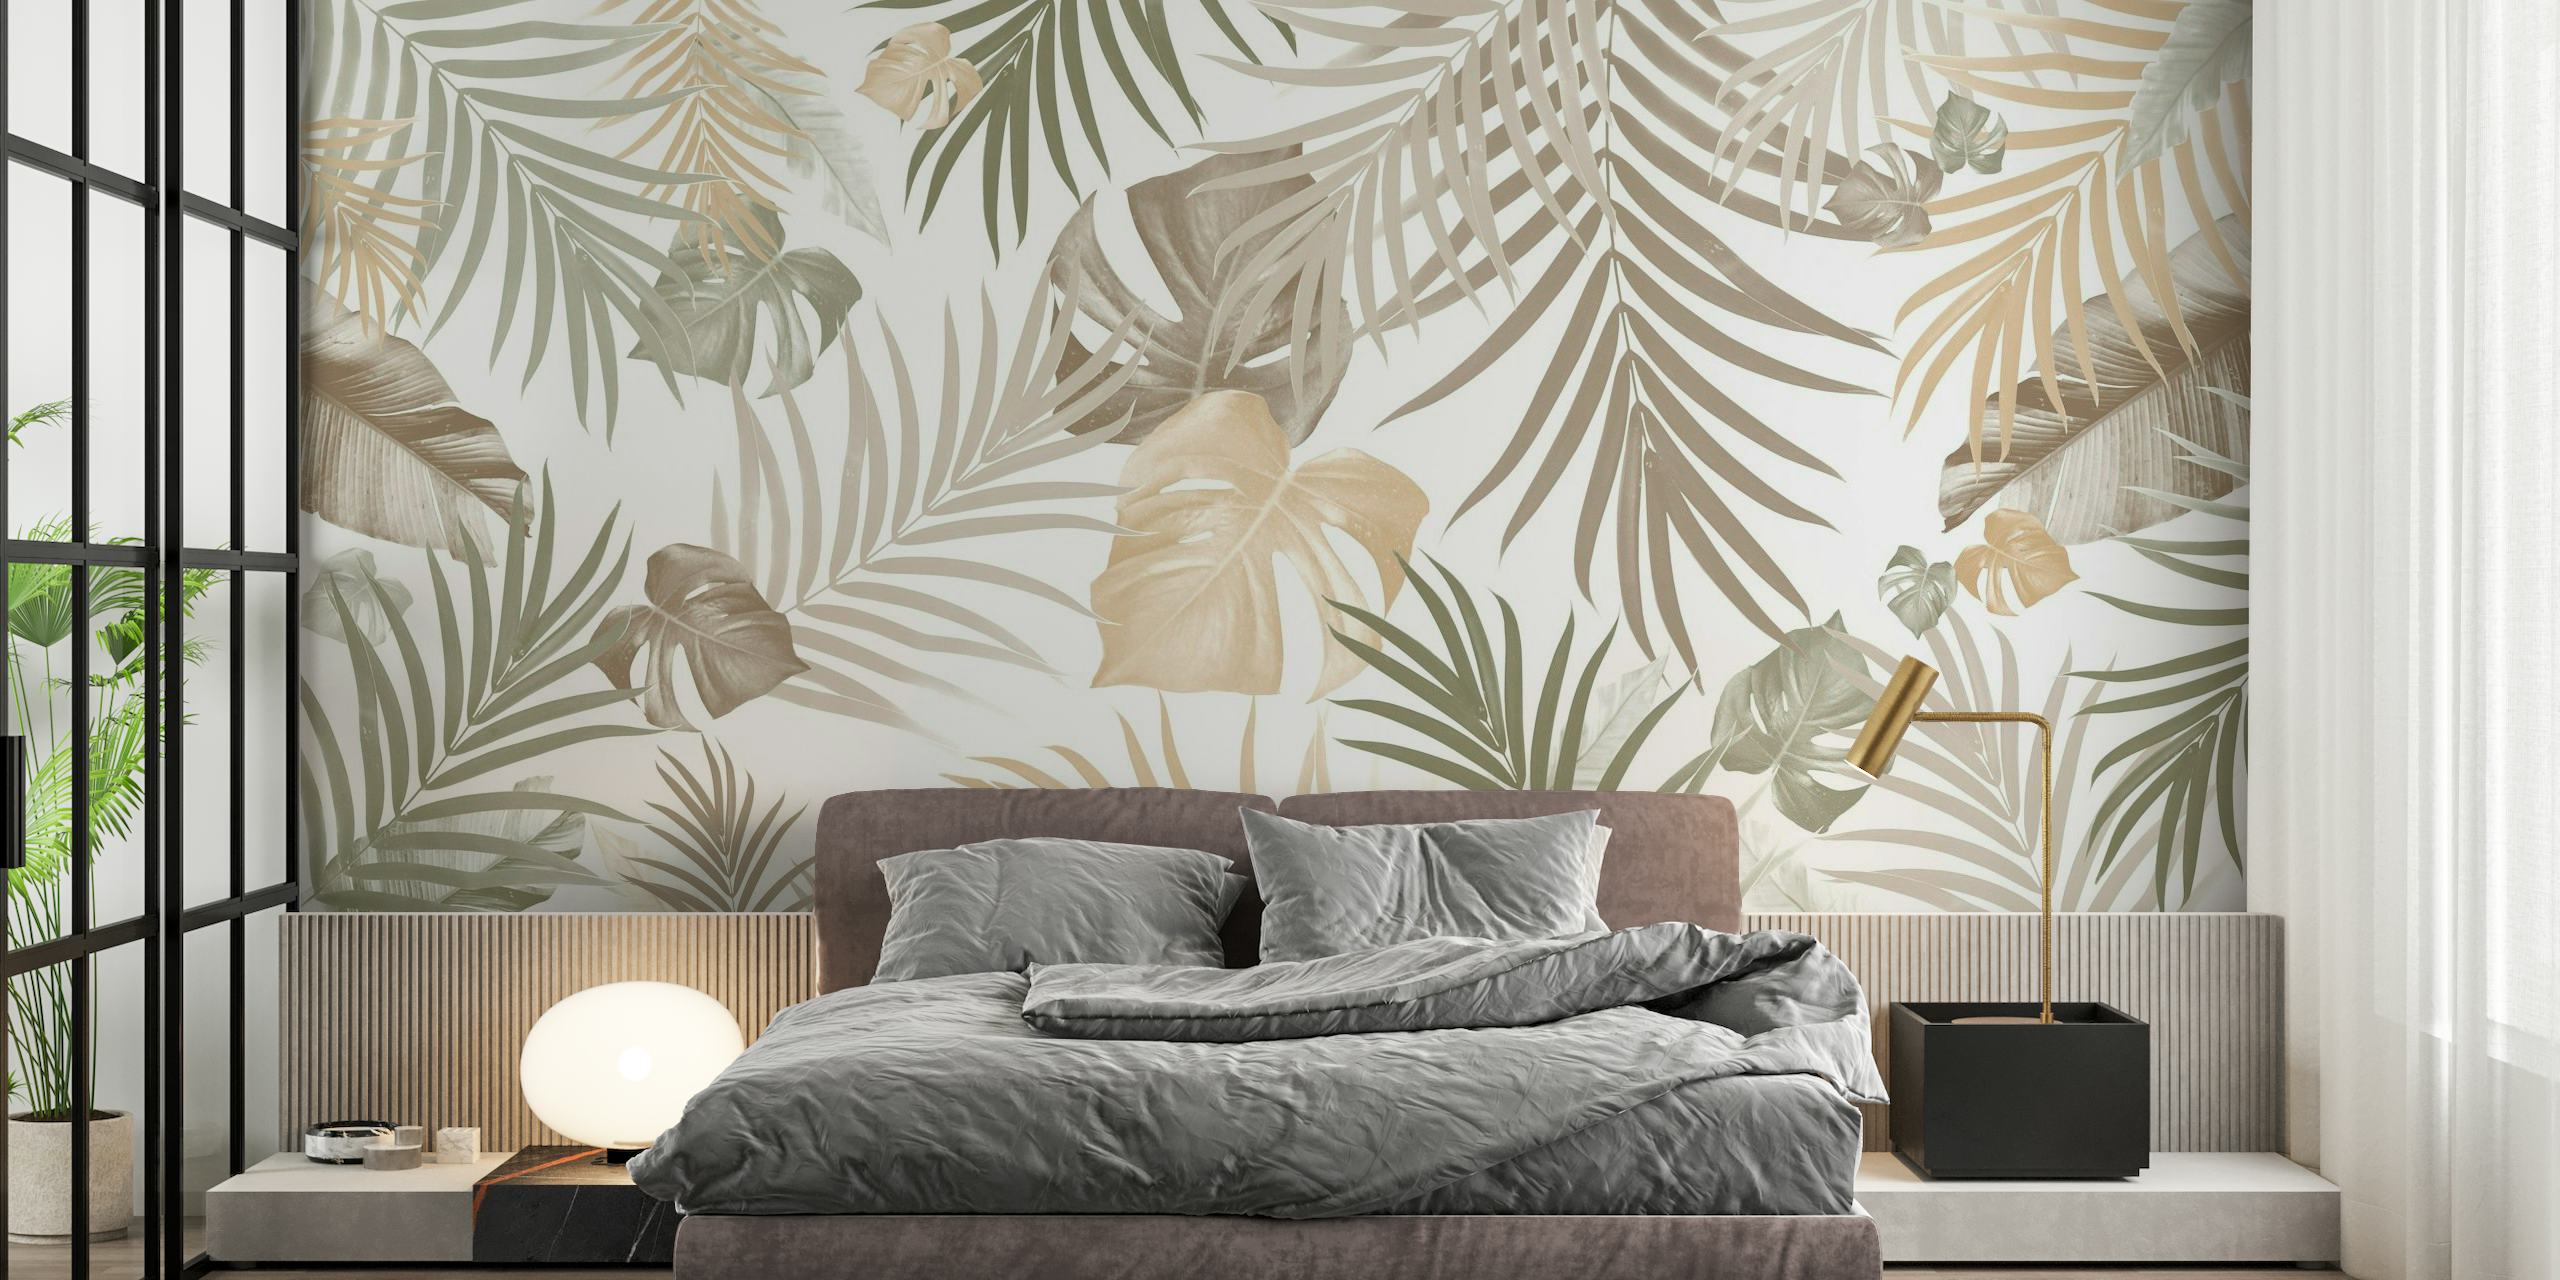 Elegante mural de pared con hojas de jungla tropical en una paleta de colores neutros